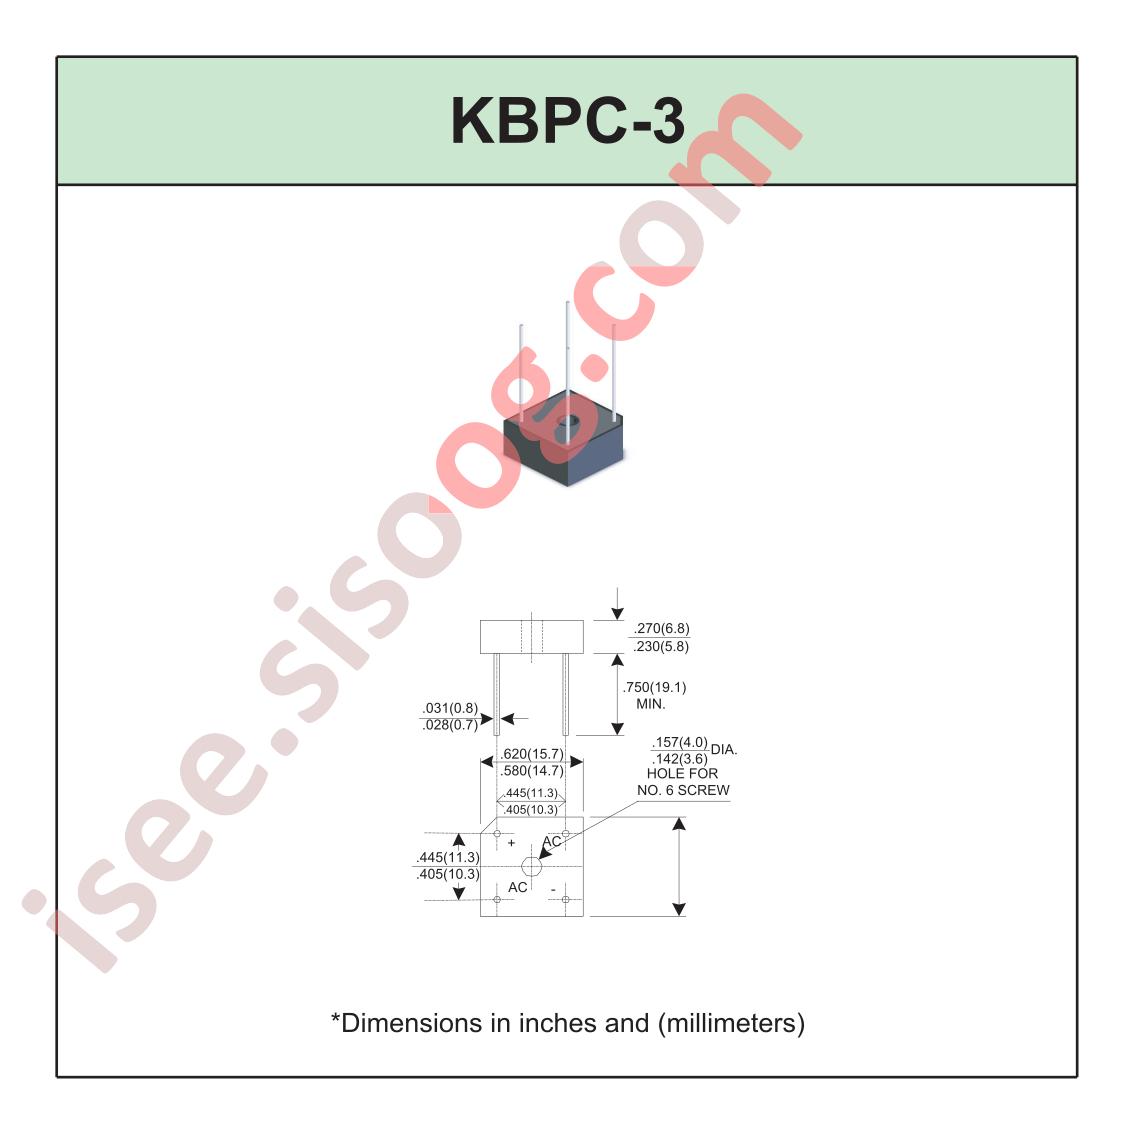 KBPC-3